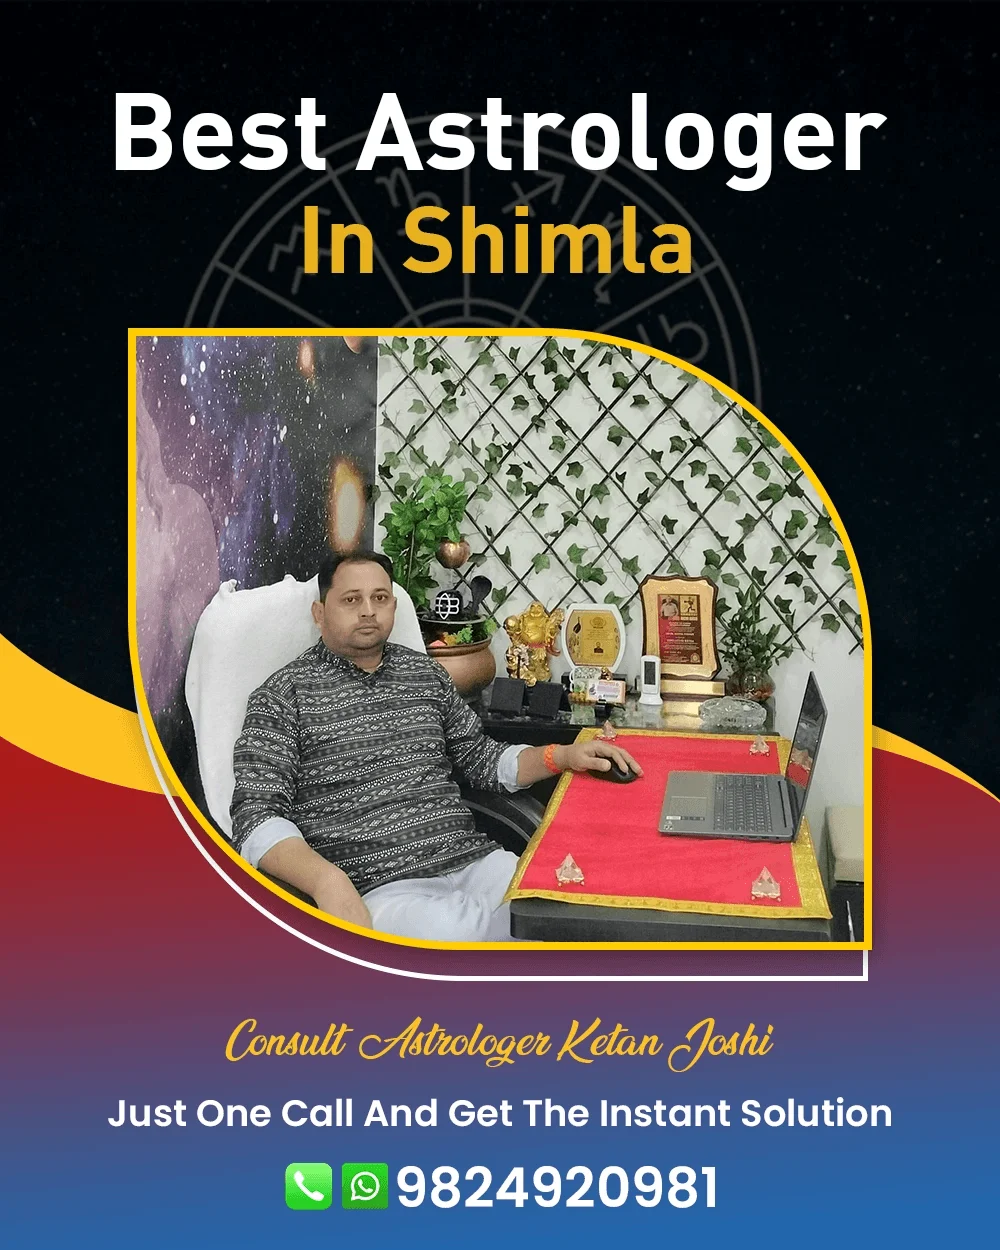 Best Astrologer In Shimla